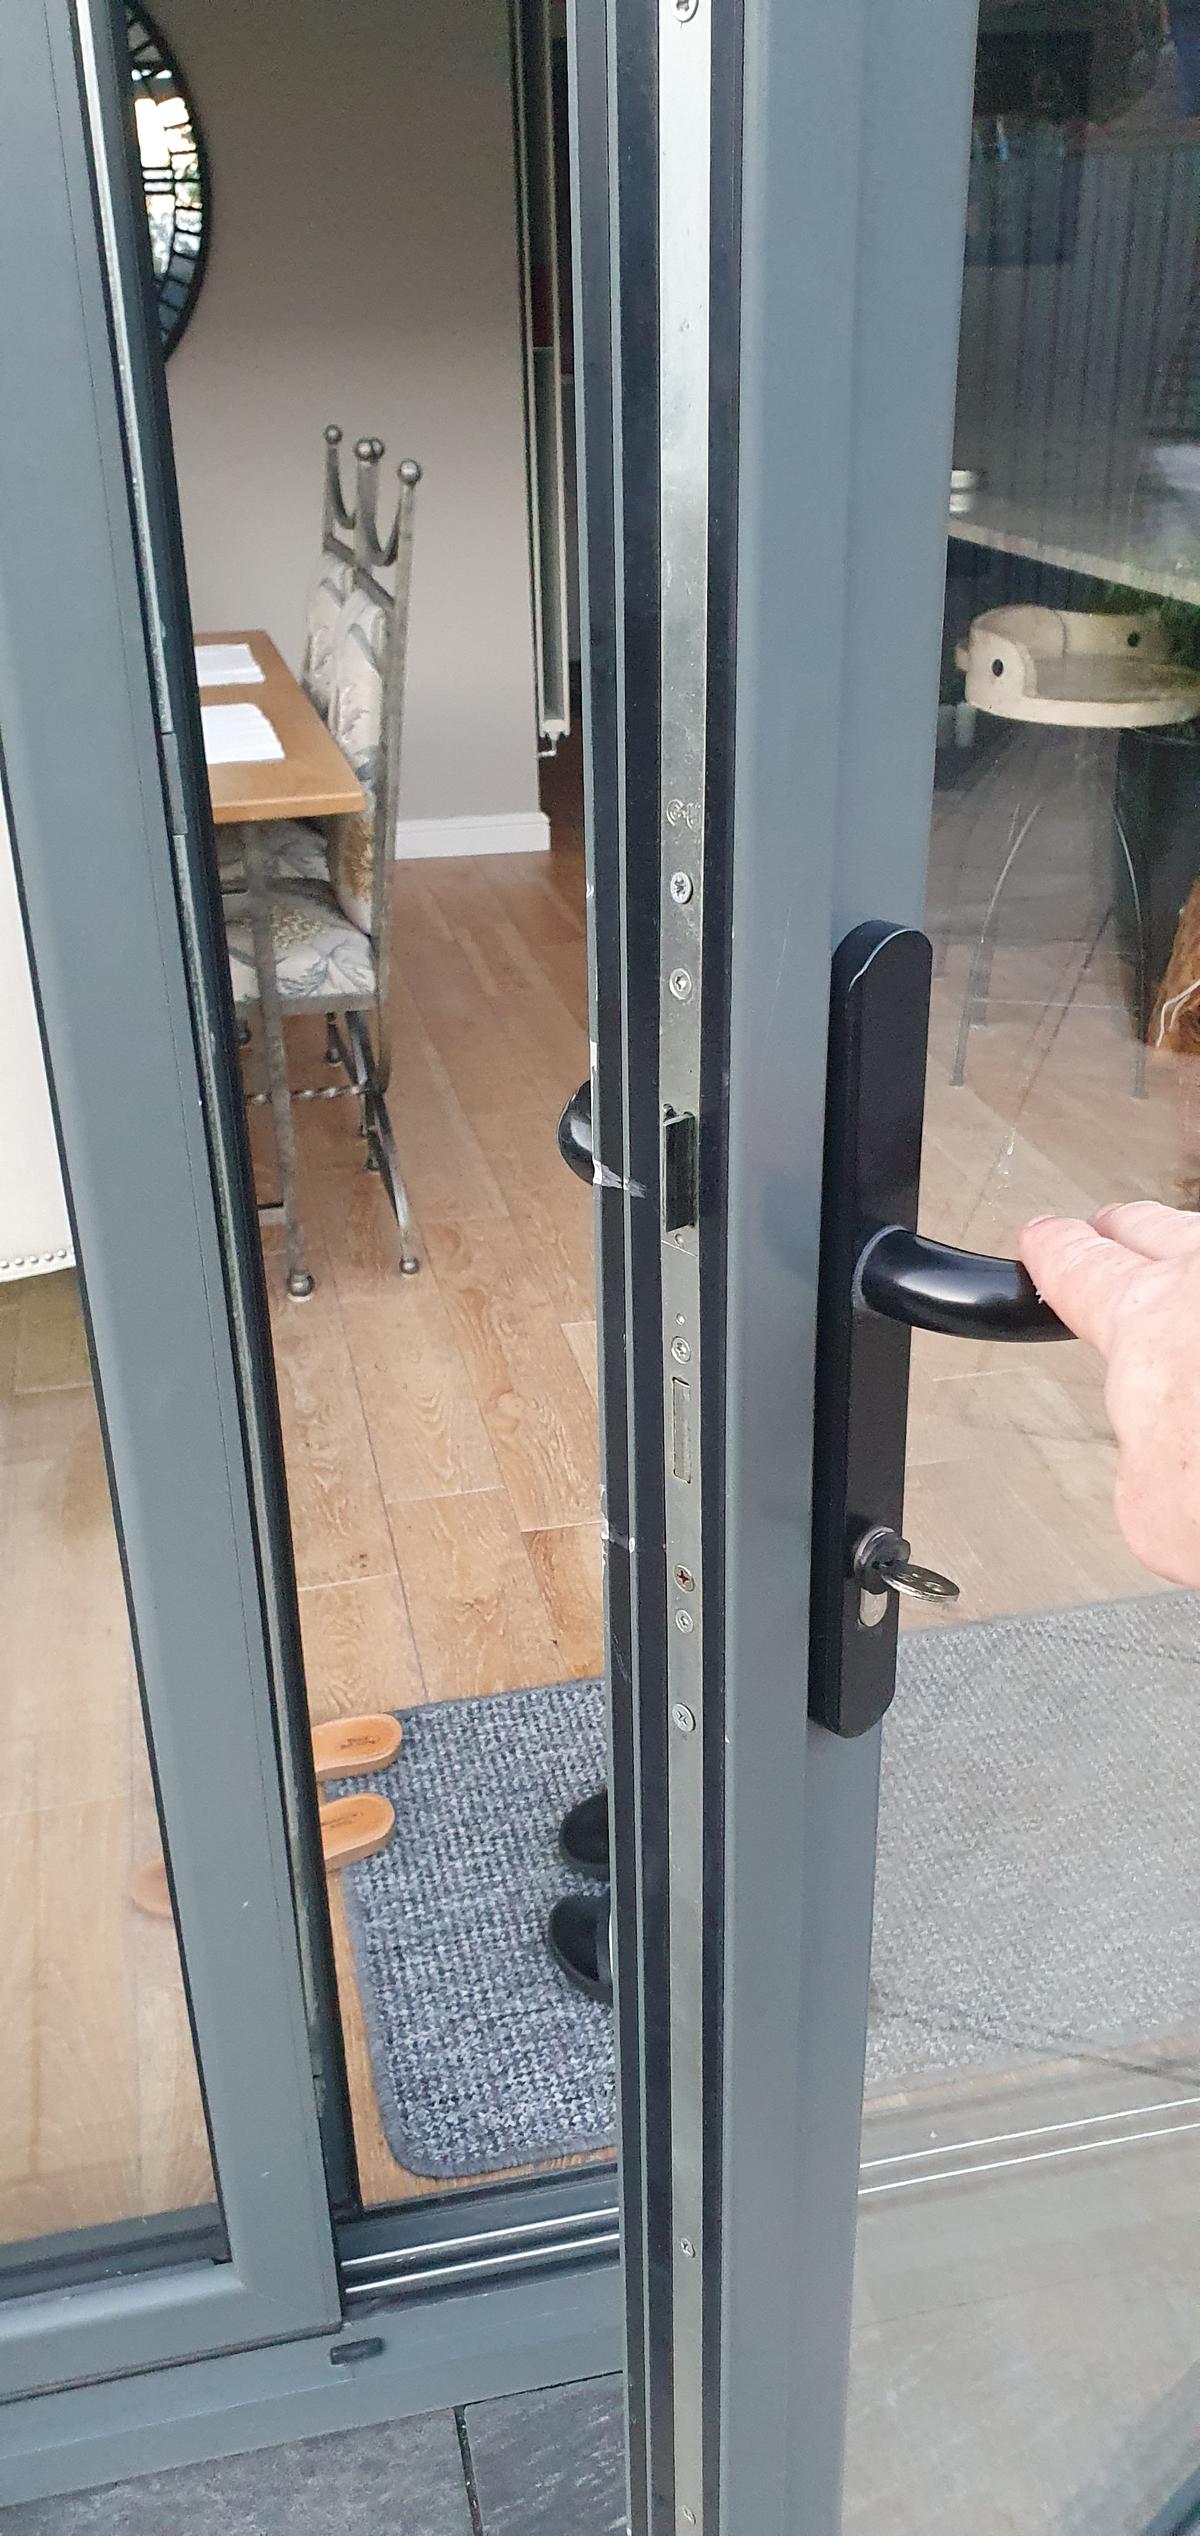 A new residential door lock install